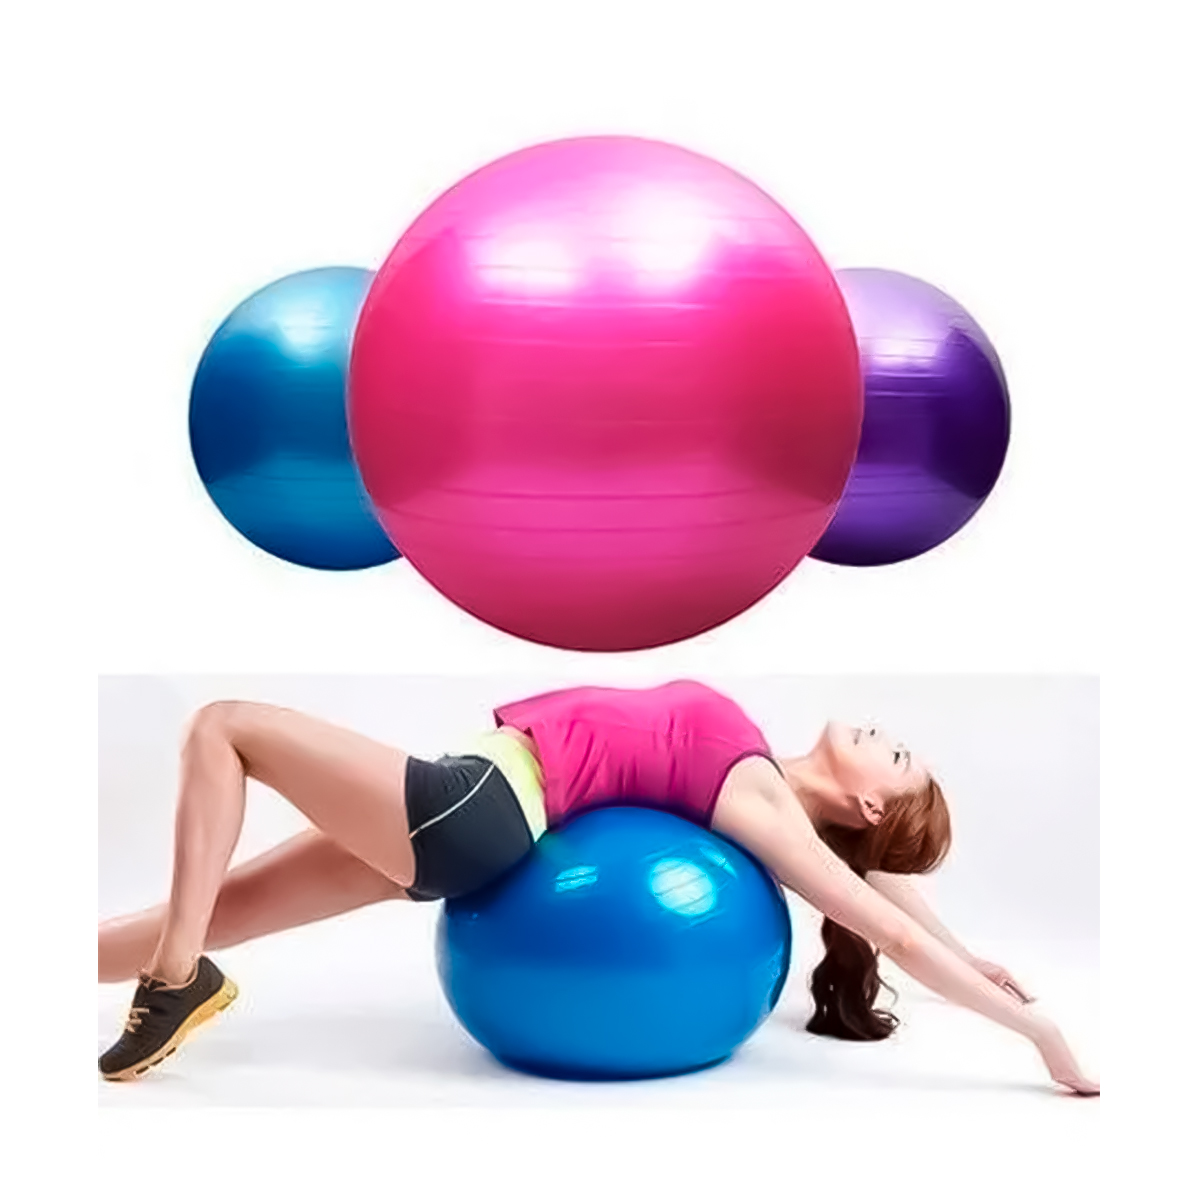 Pelota de yoga con bomba - Pelota de pilates - Pelota de fitness